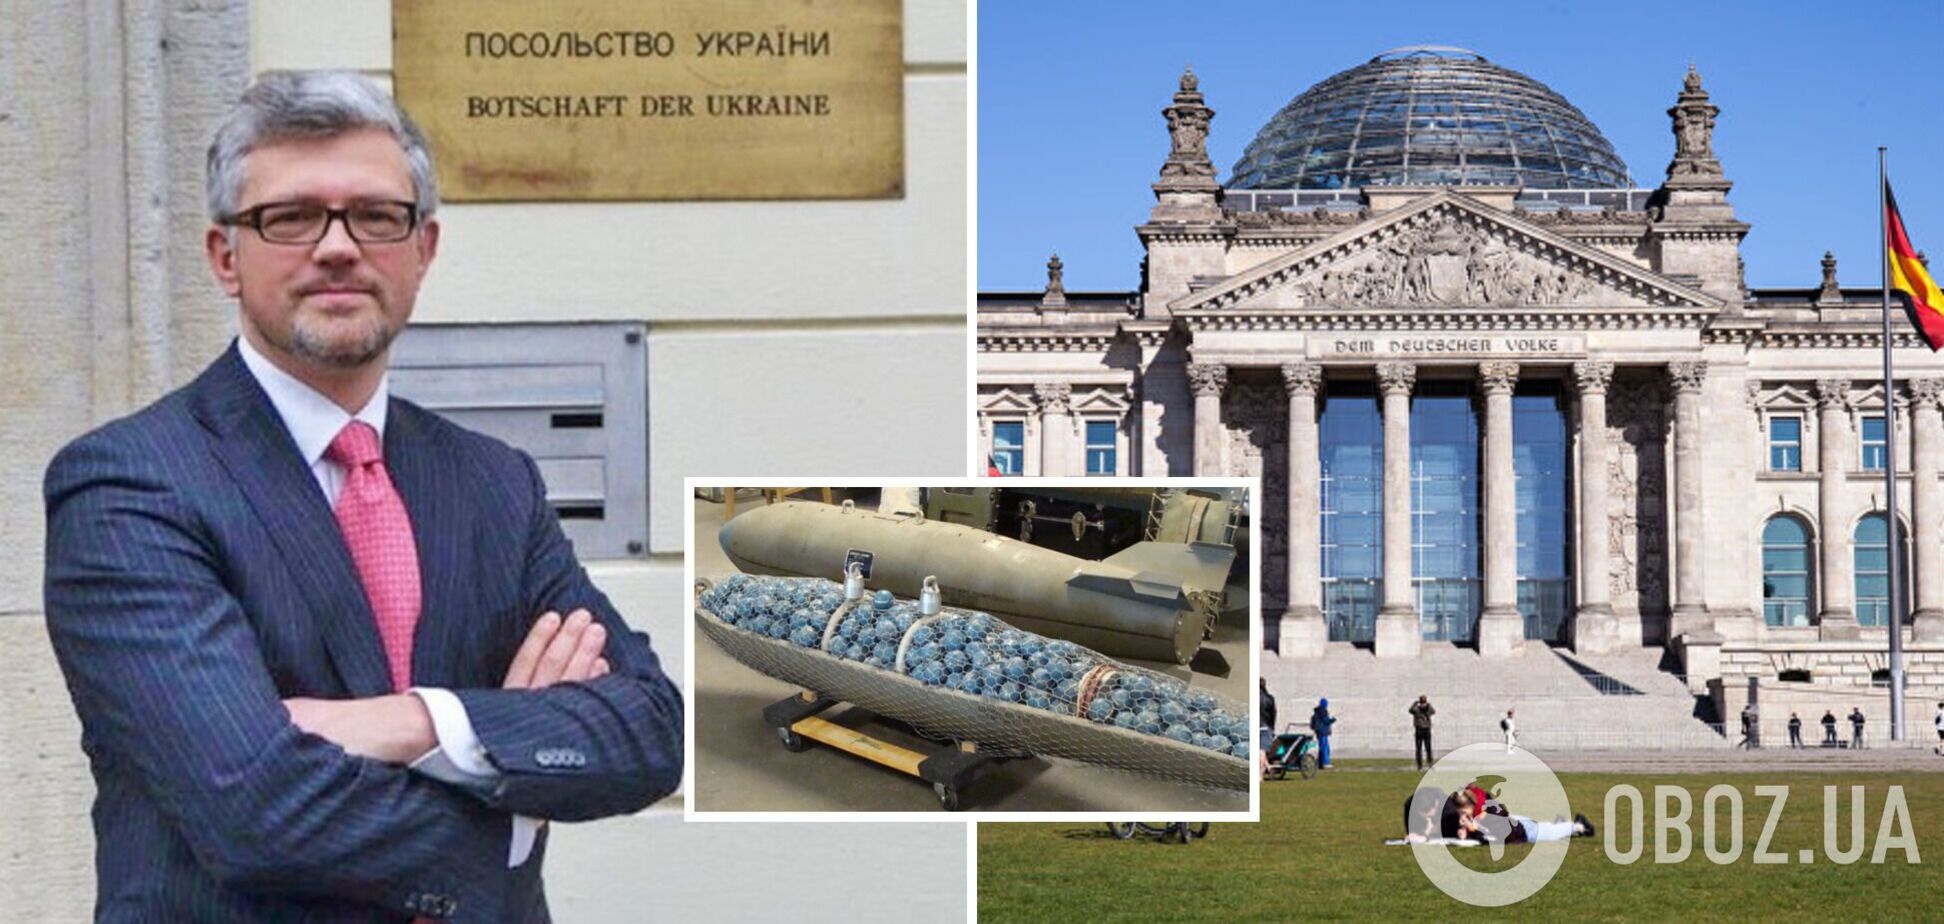 'Идите к чертям со своими советами!' Украинский дипломат ответил немецкому депутату на скандальное заявление